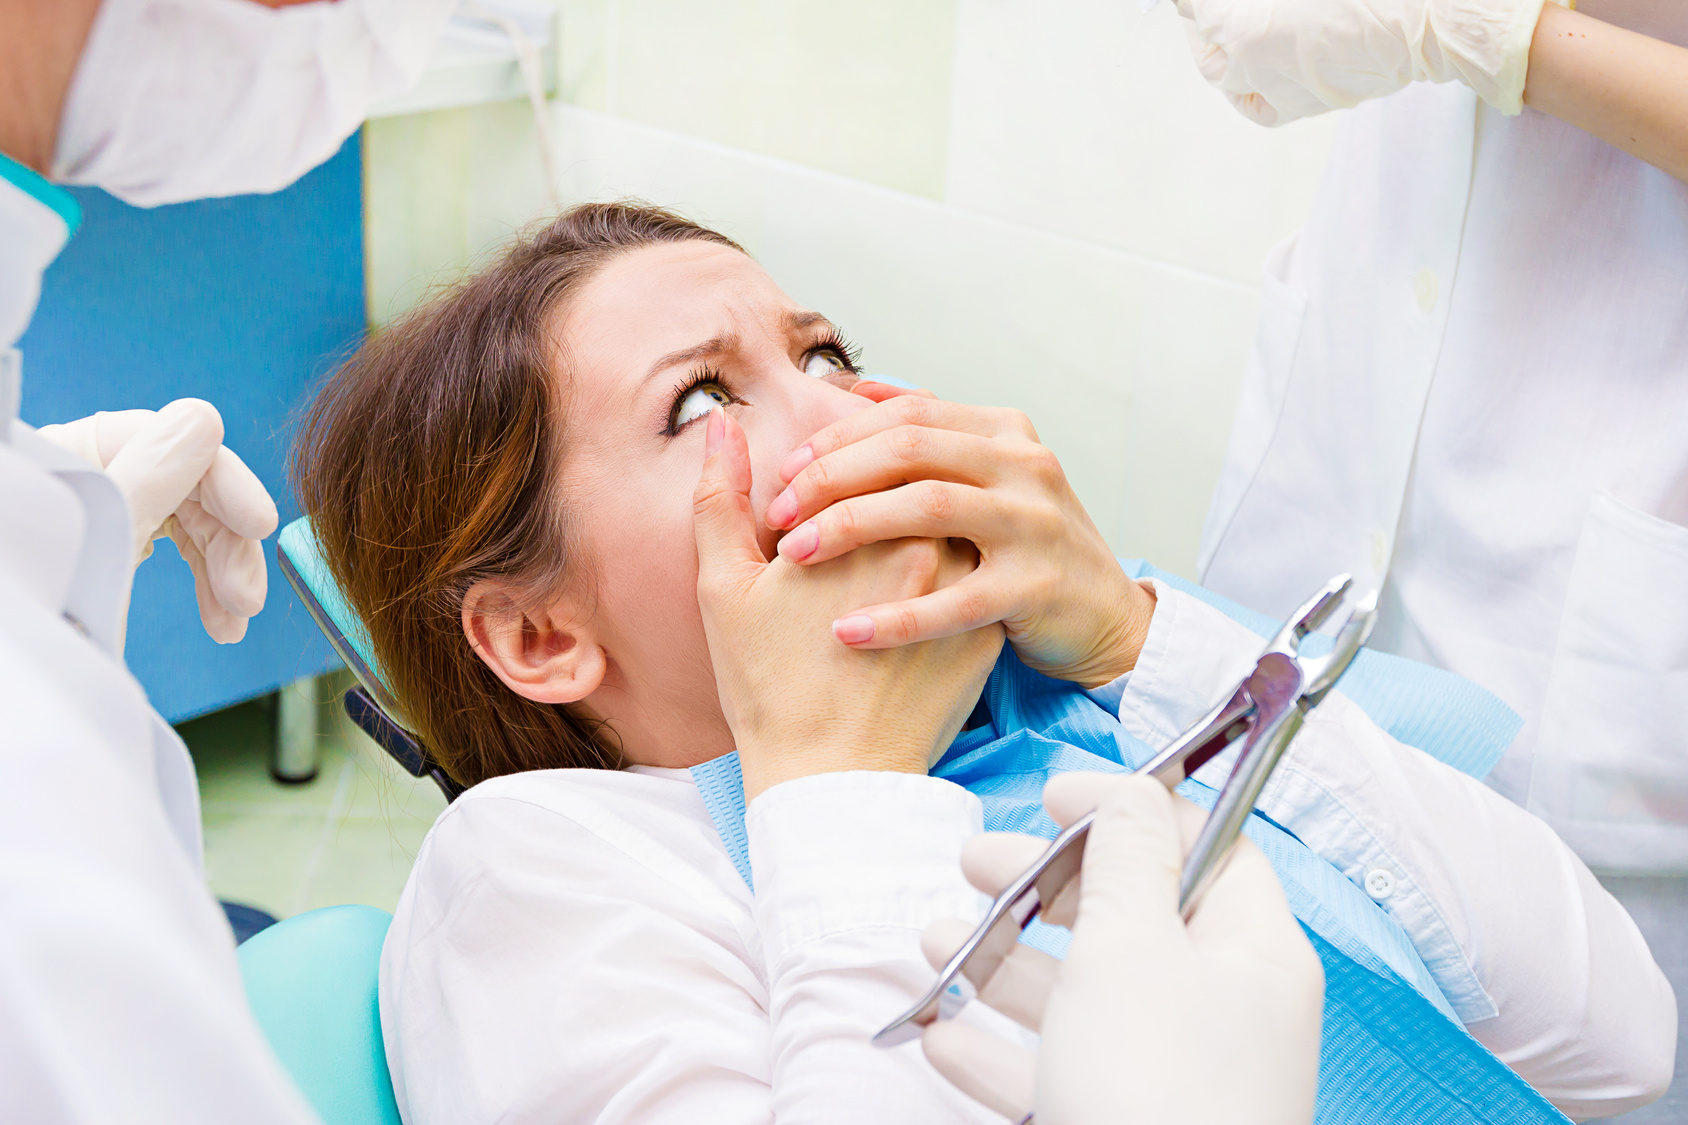  La fobia al dentista tiene solución